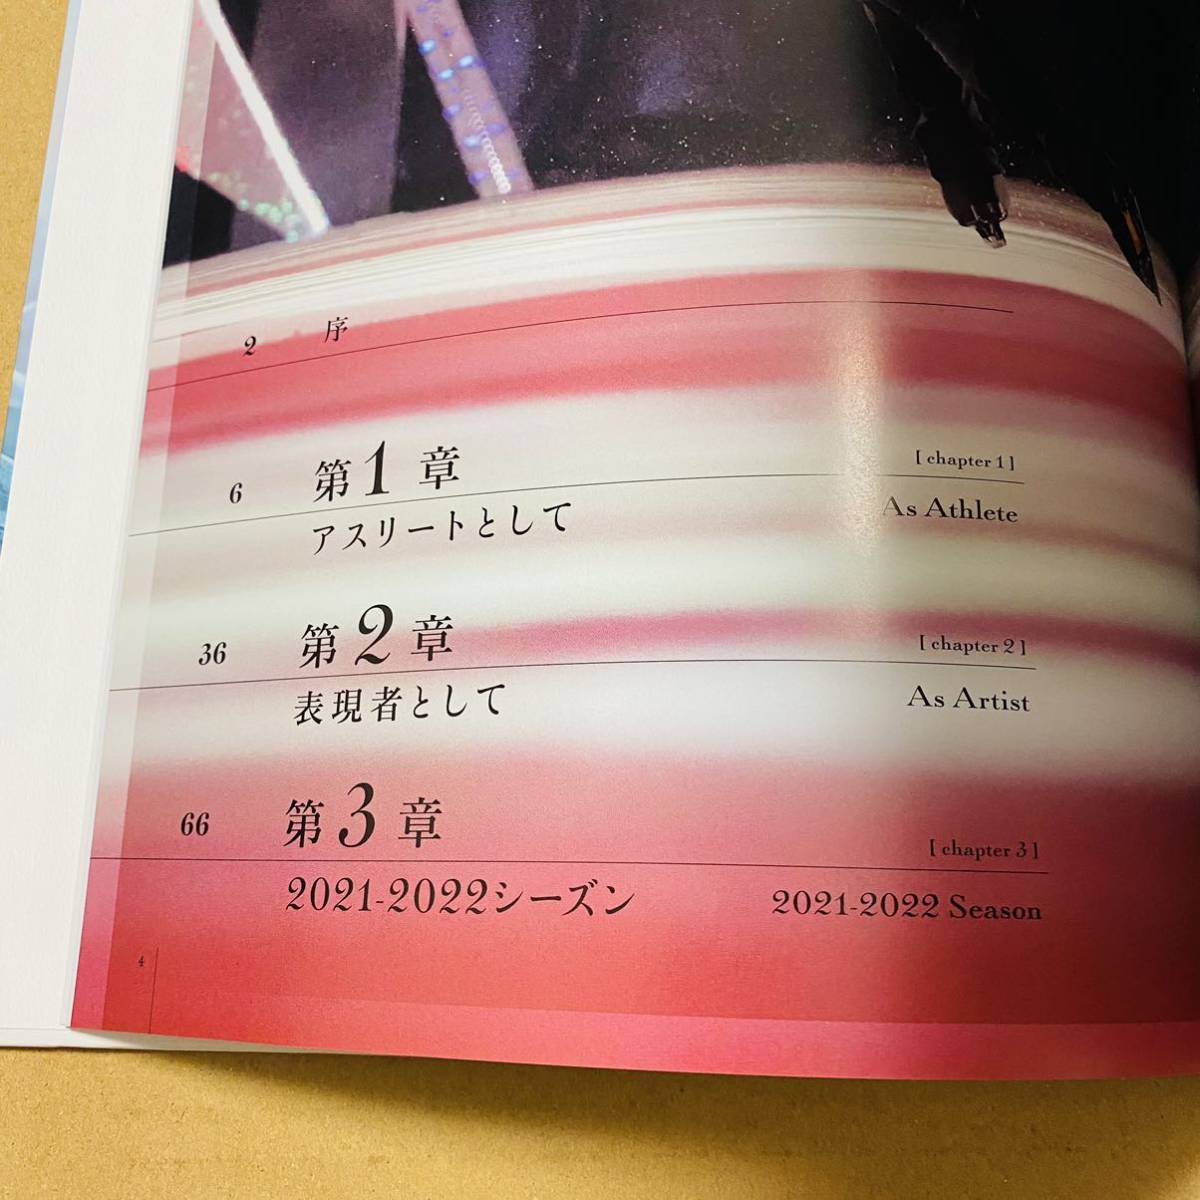 [ альбом с иллюстрациями ] Hanyu Yuzuru выставка 2022.. газета Tokyo главный офис фотоальбом 